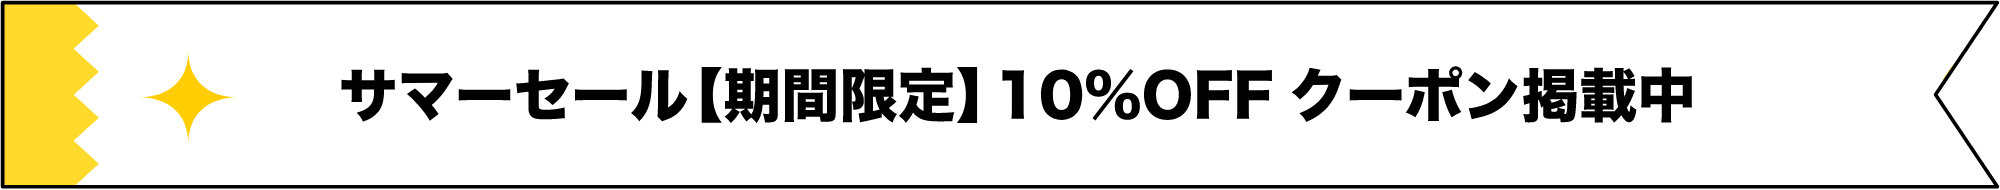 スーパーサマーセール【期間限定】10%OFFクーポン掲載中